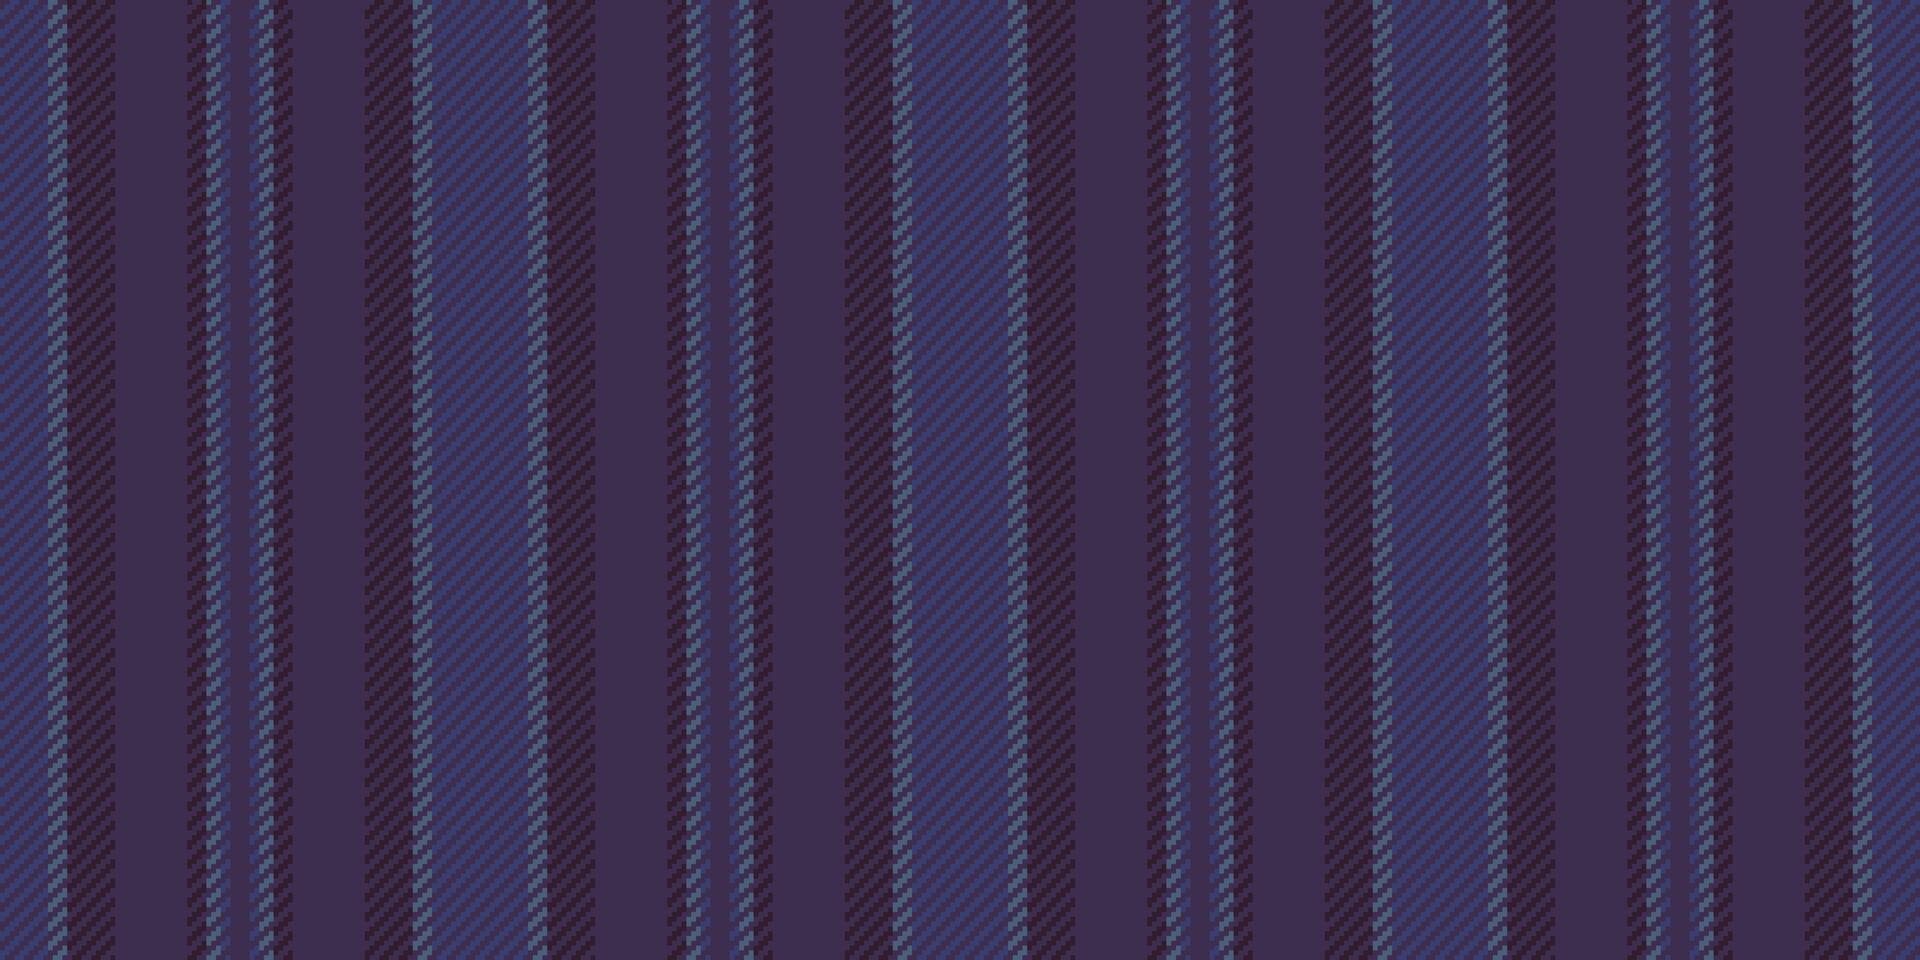 faserig Textil- Stoff Vertikale, das Erntedankfest Muster Hintergrund Linien. Oberfläche Streifen Vektor Textur nahtlos im violett und Blau Farben.